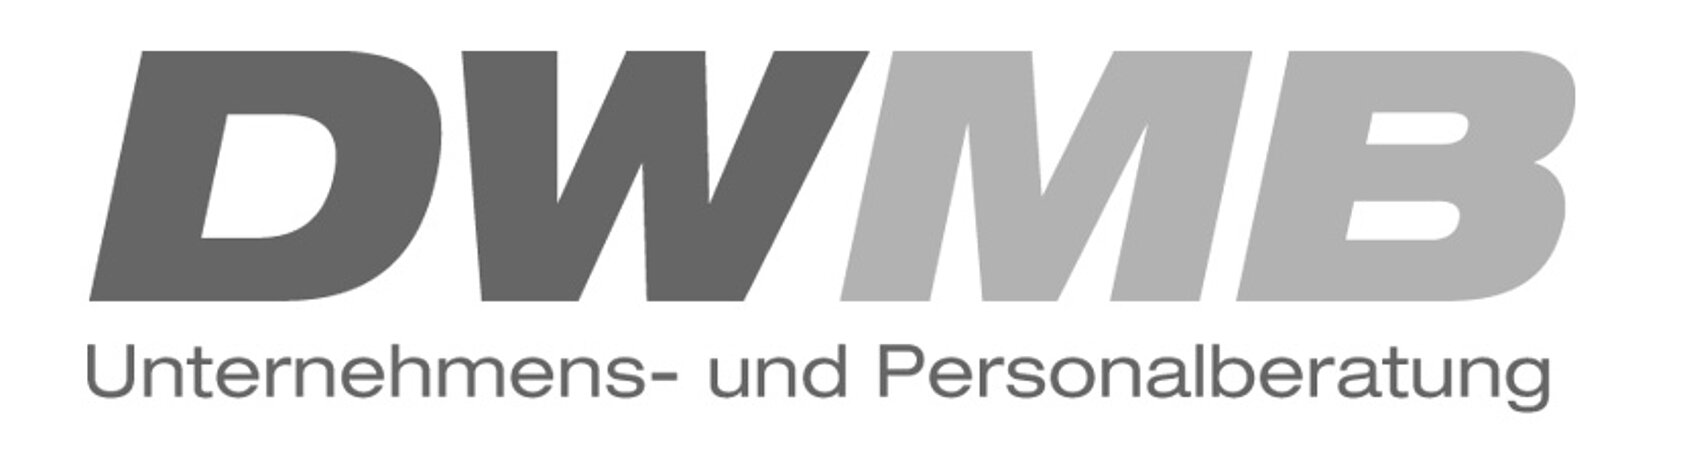 DWMB sucht Kundendiensttechniker als Vertriebsaußendienst (m/w/d) Umweltschonende Wasser- / Heizwassertechnik Hessen (Home-Office)